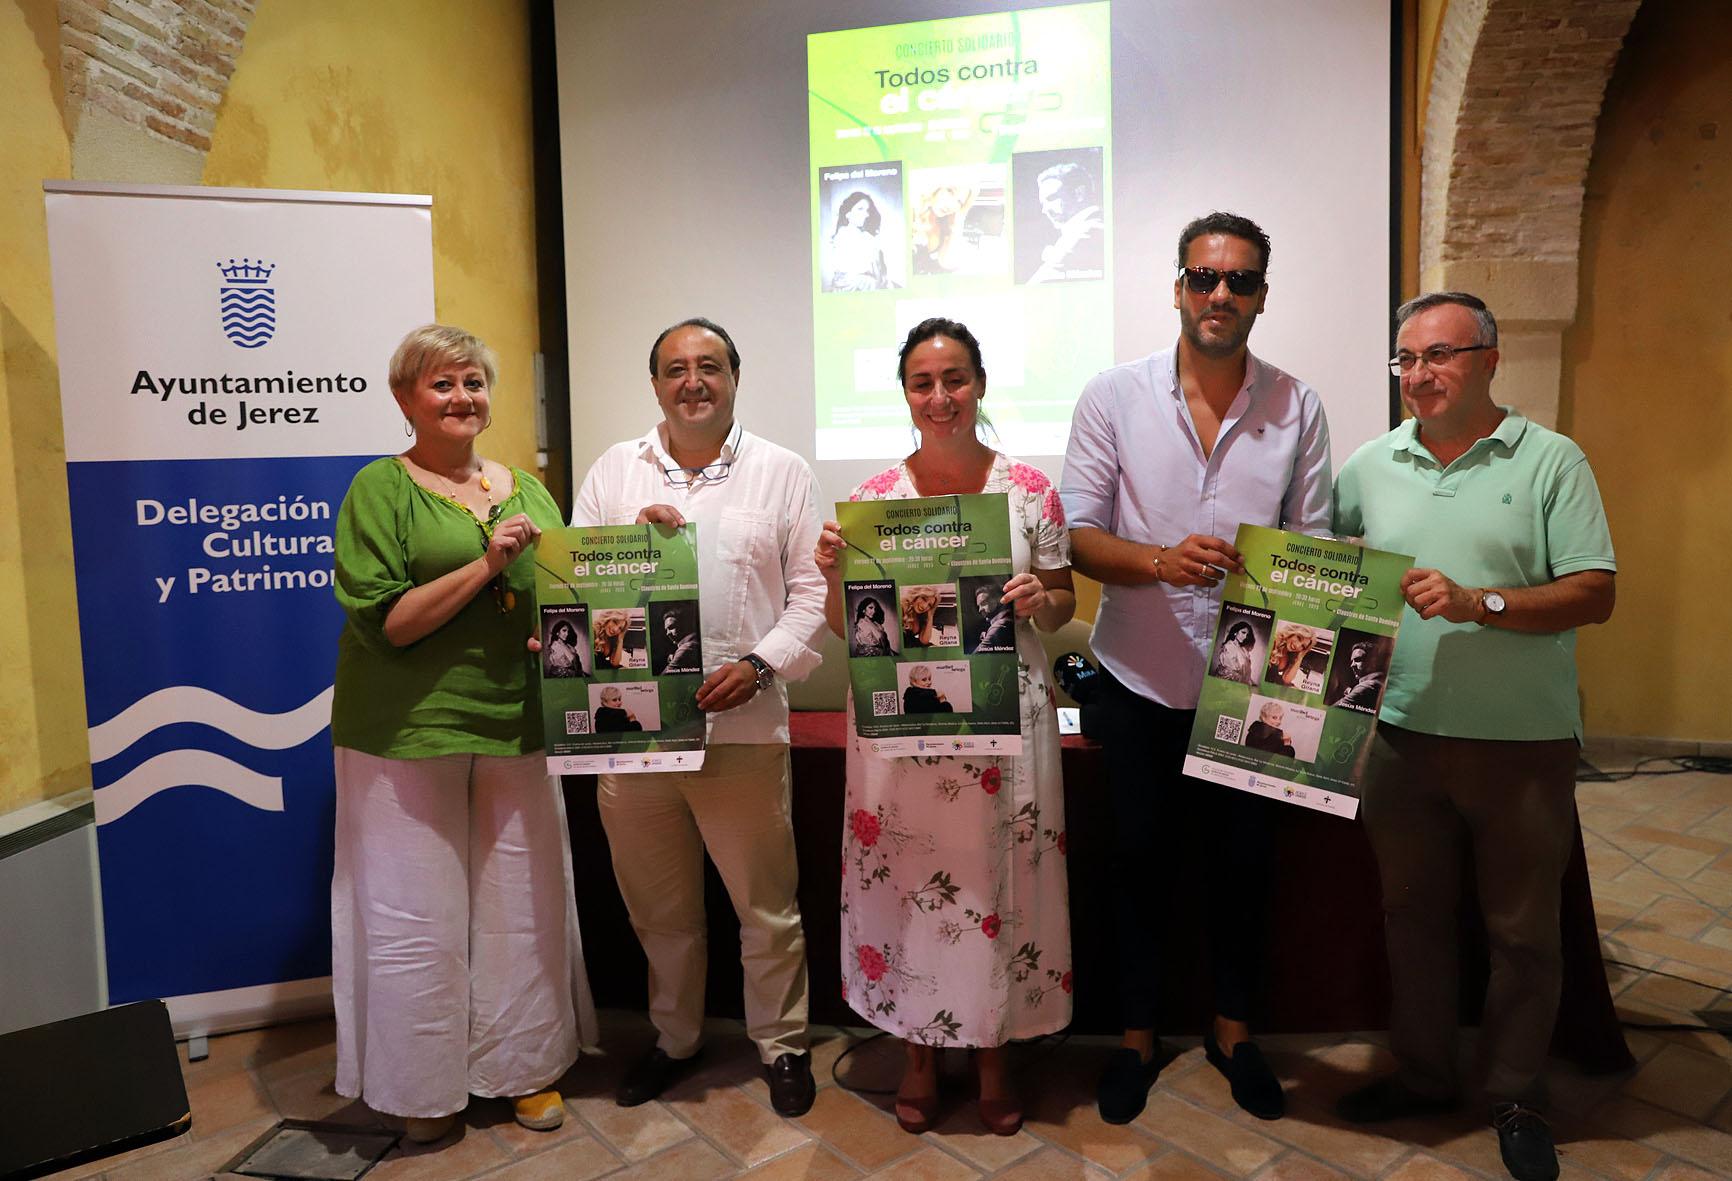 El Concierto Solidario 'Todos contra el cáncer' llenará Los Claustros de Santo Domingo de talento jerezano y compromiso